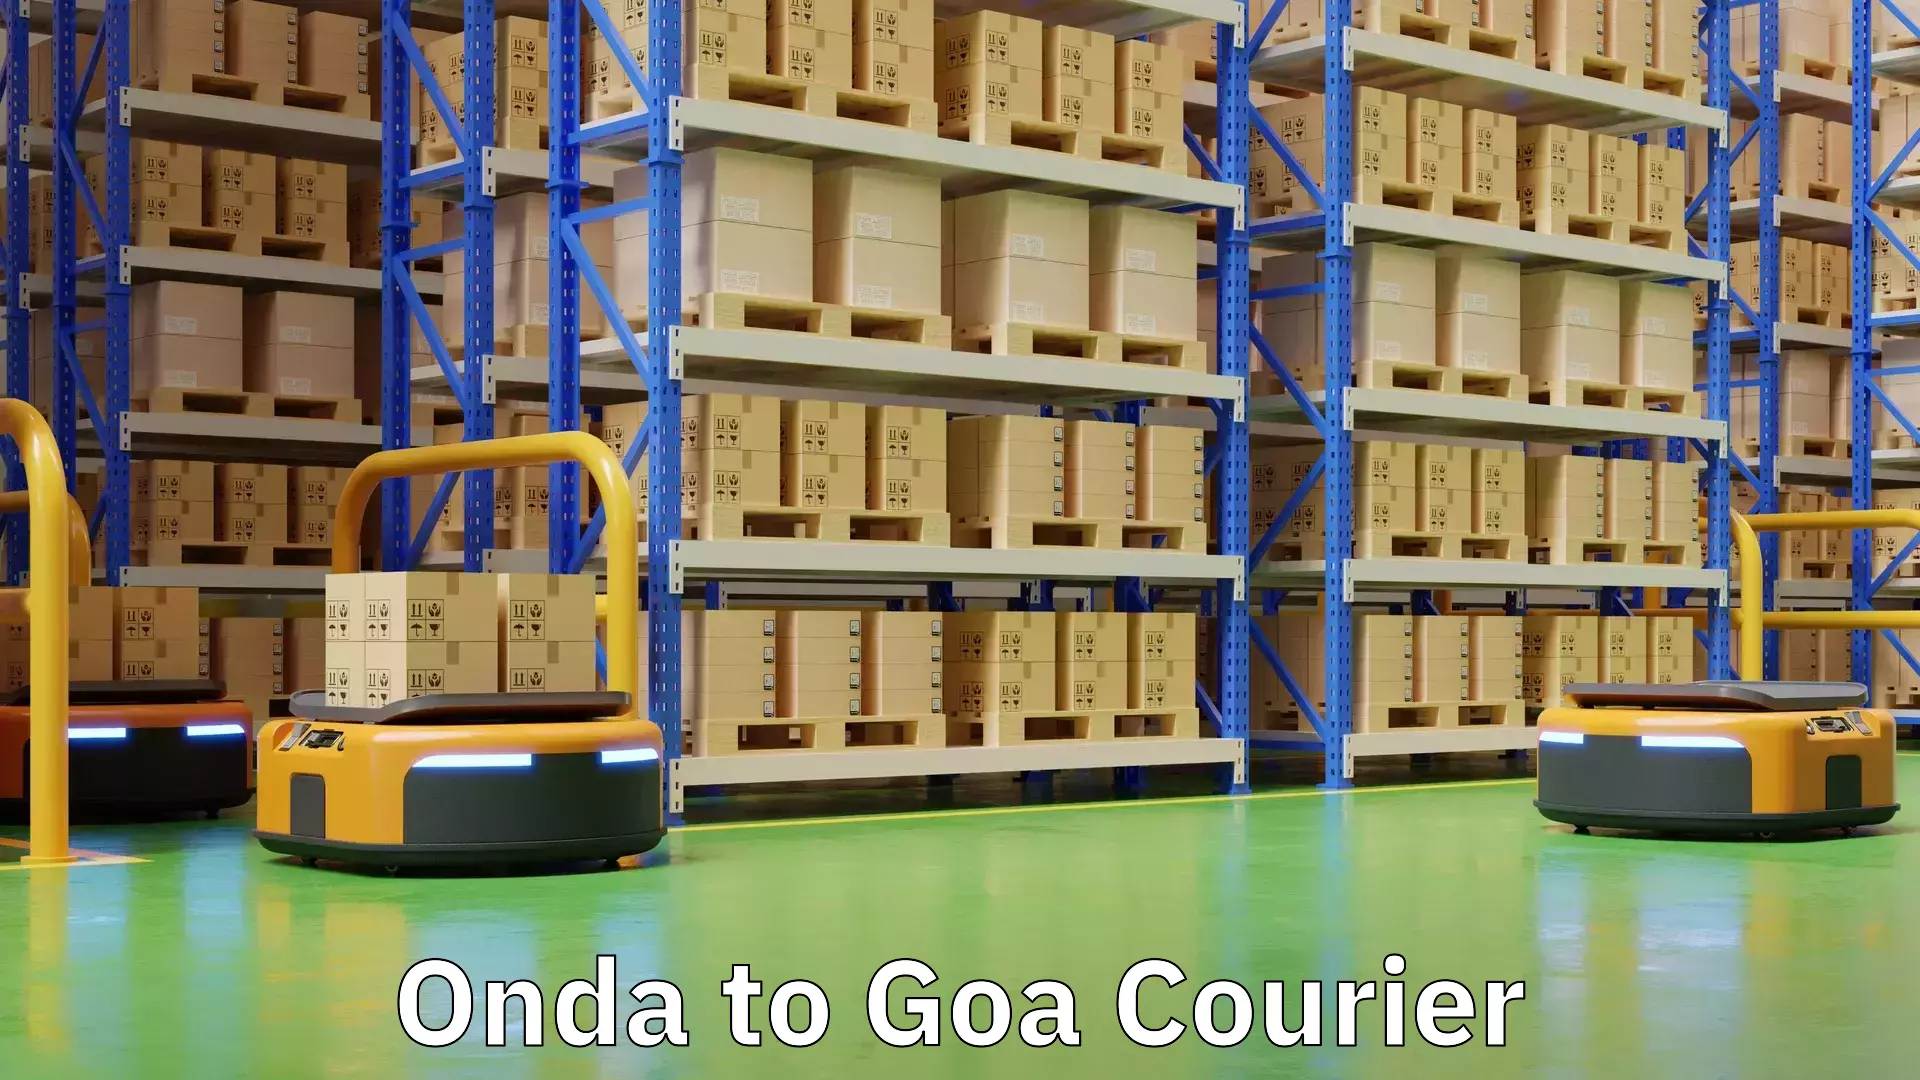 User-friendly courier app Onda to Goa